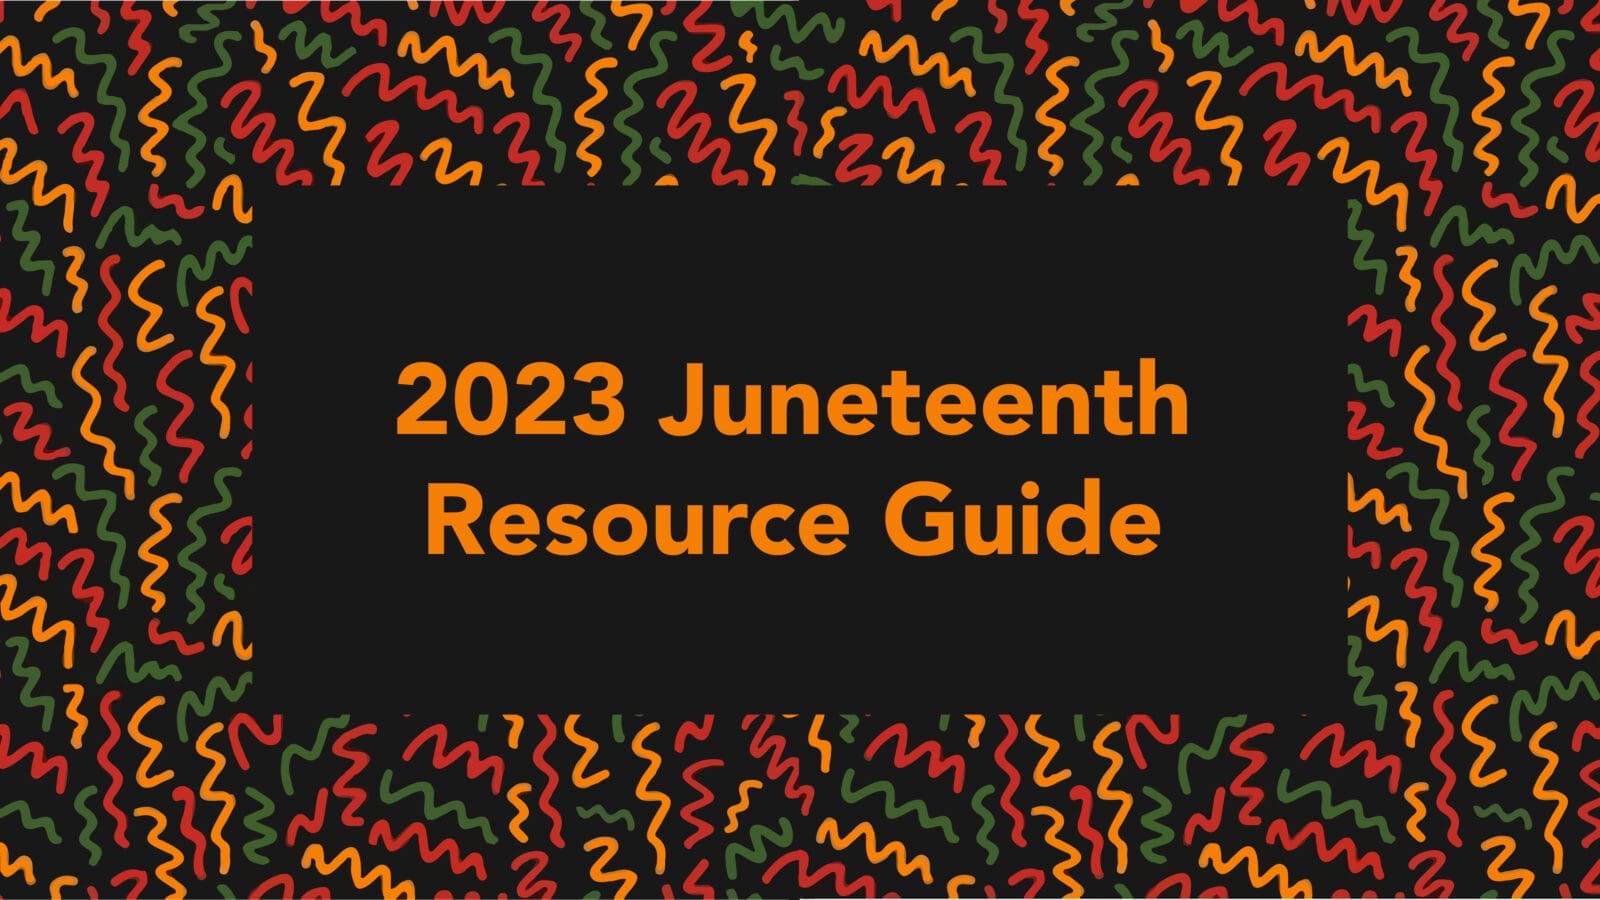 2023 JuneteenthResource Guide on colorful background